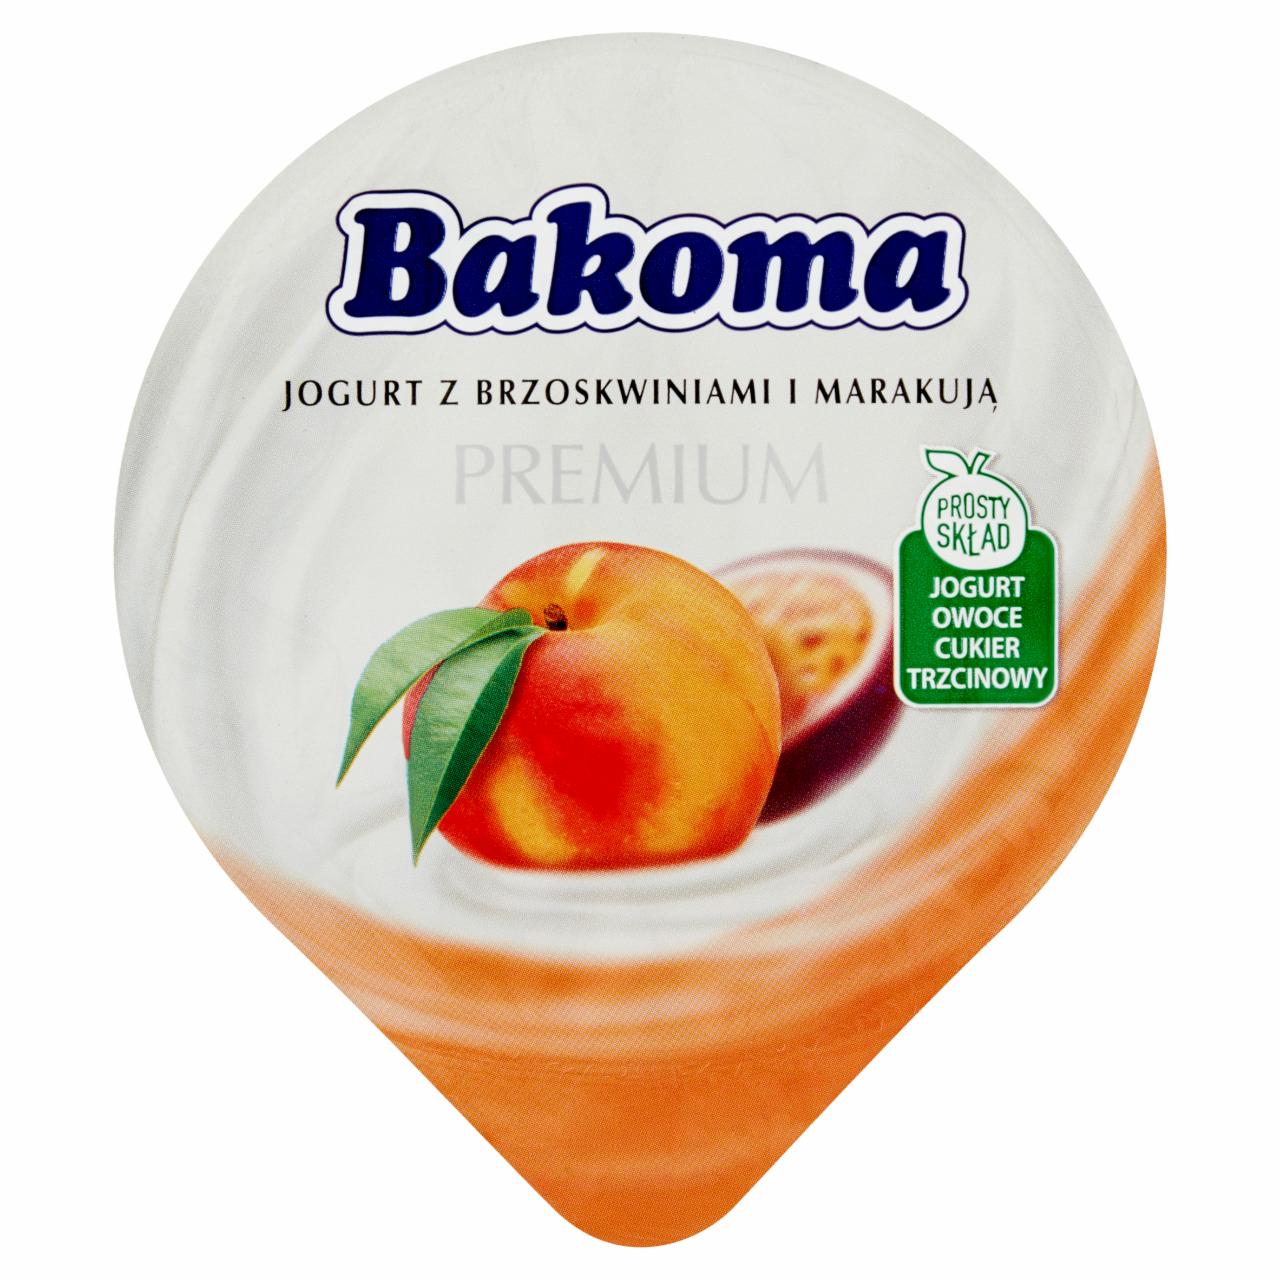 Zdjęcia - Bakoma Premium Jogurt z brzoskwiniami i marakują 300 g